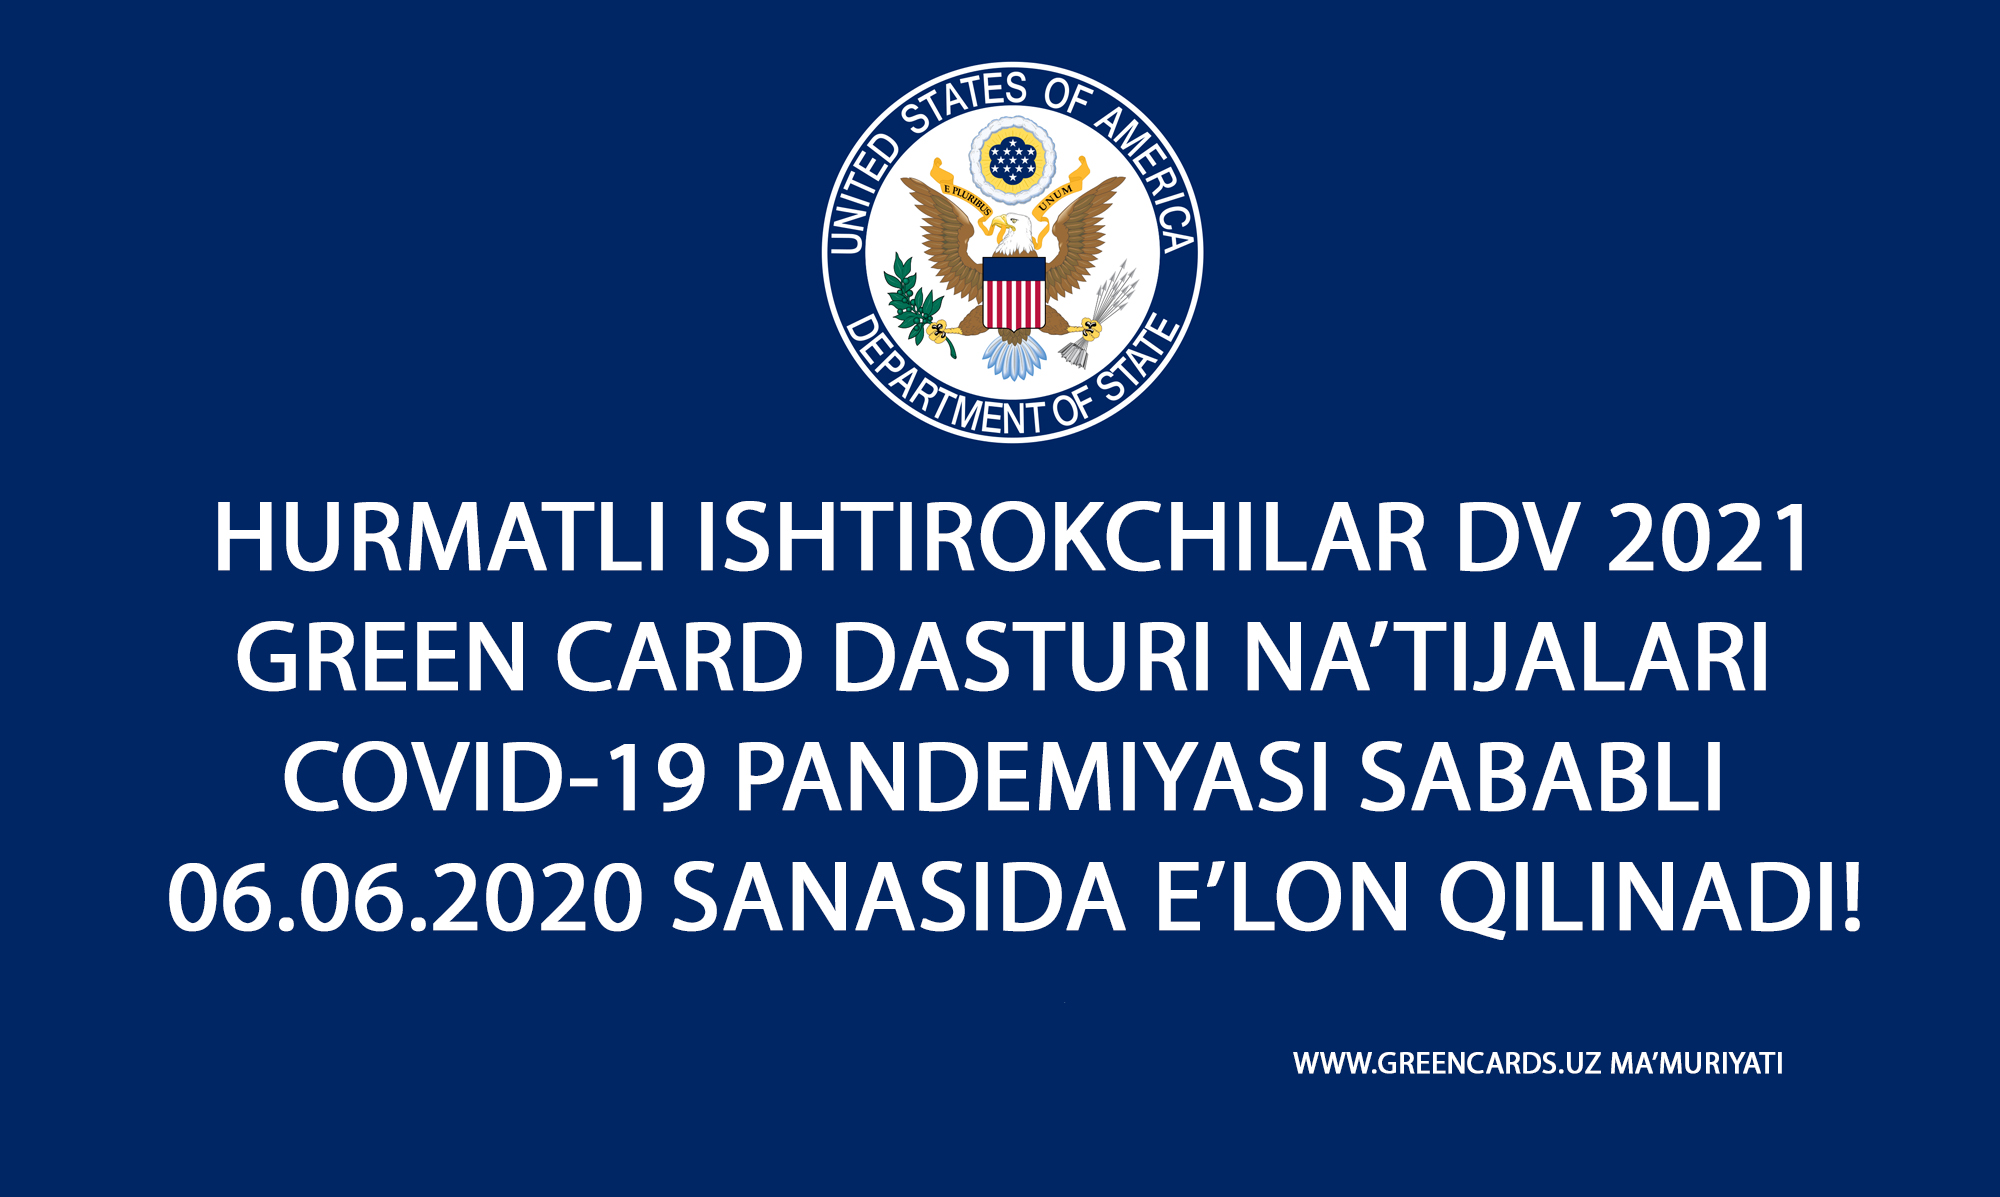 DV 2021 GREEN CARD DASTURI NA'TIJALARI CHIQISH SANASI O'ZGARDI.